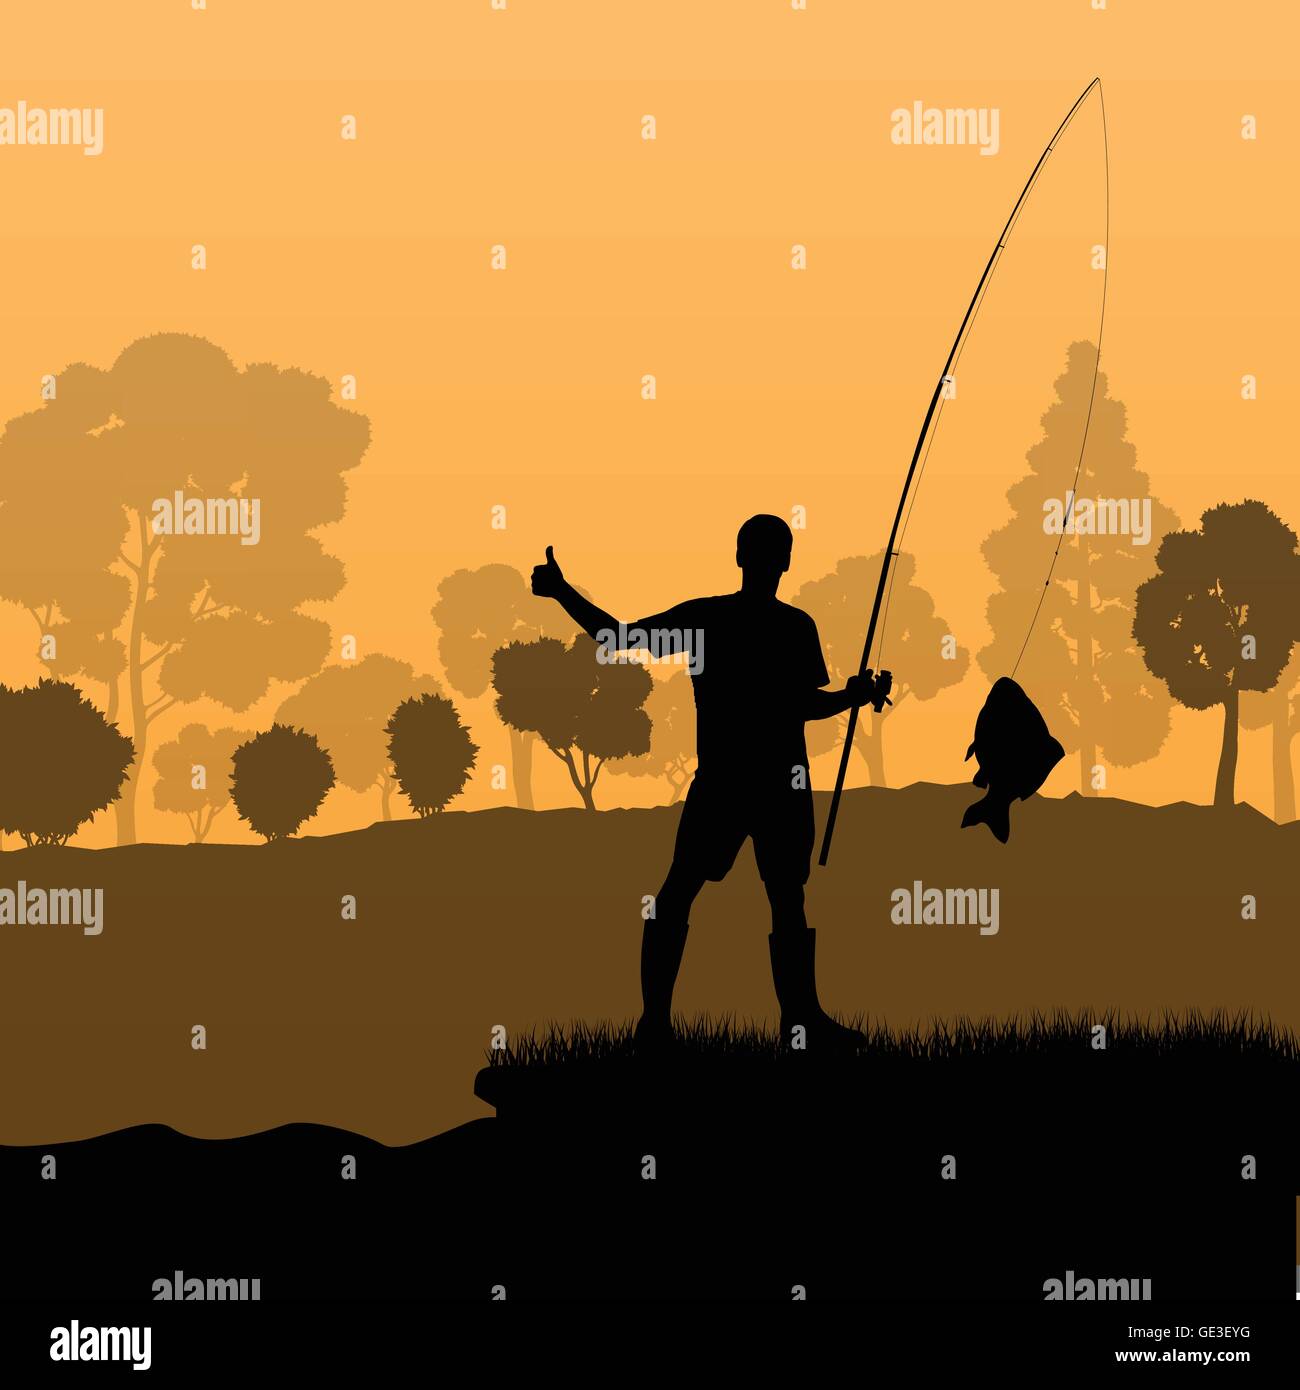 El pescador, el pescador vector concepto paisaje de fondo con árboles y río Ilustración del Vector